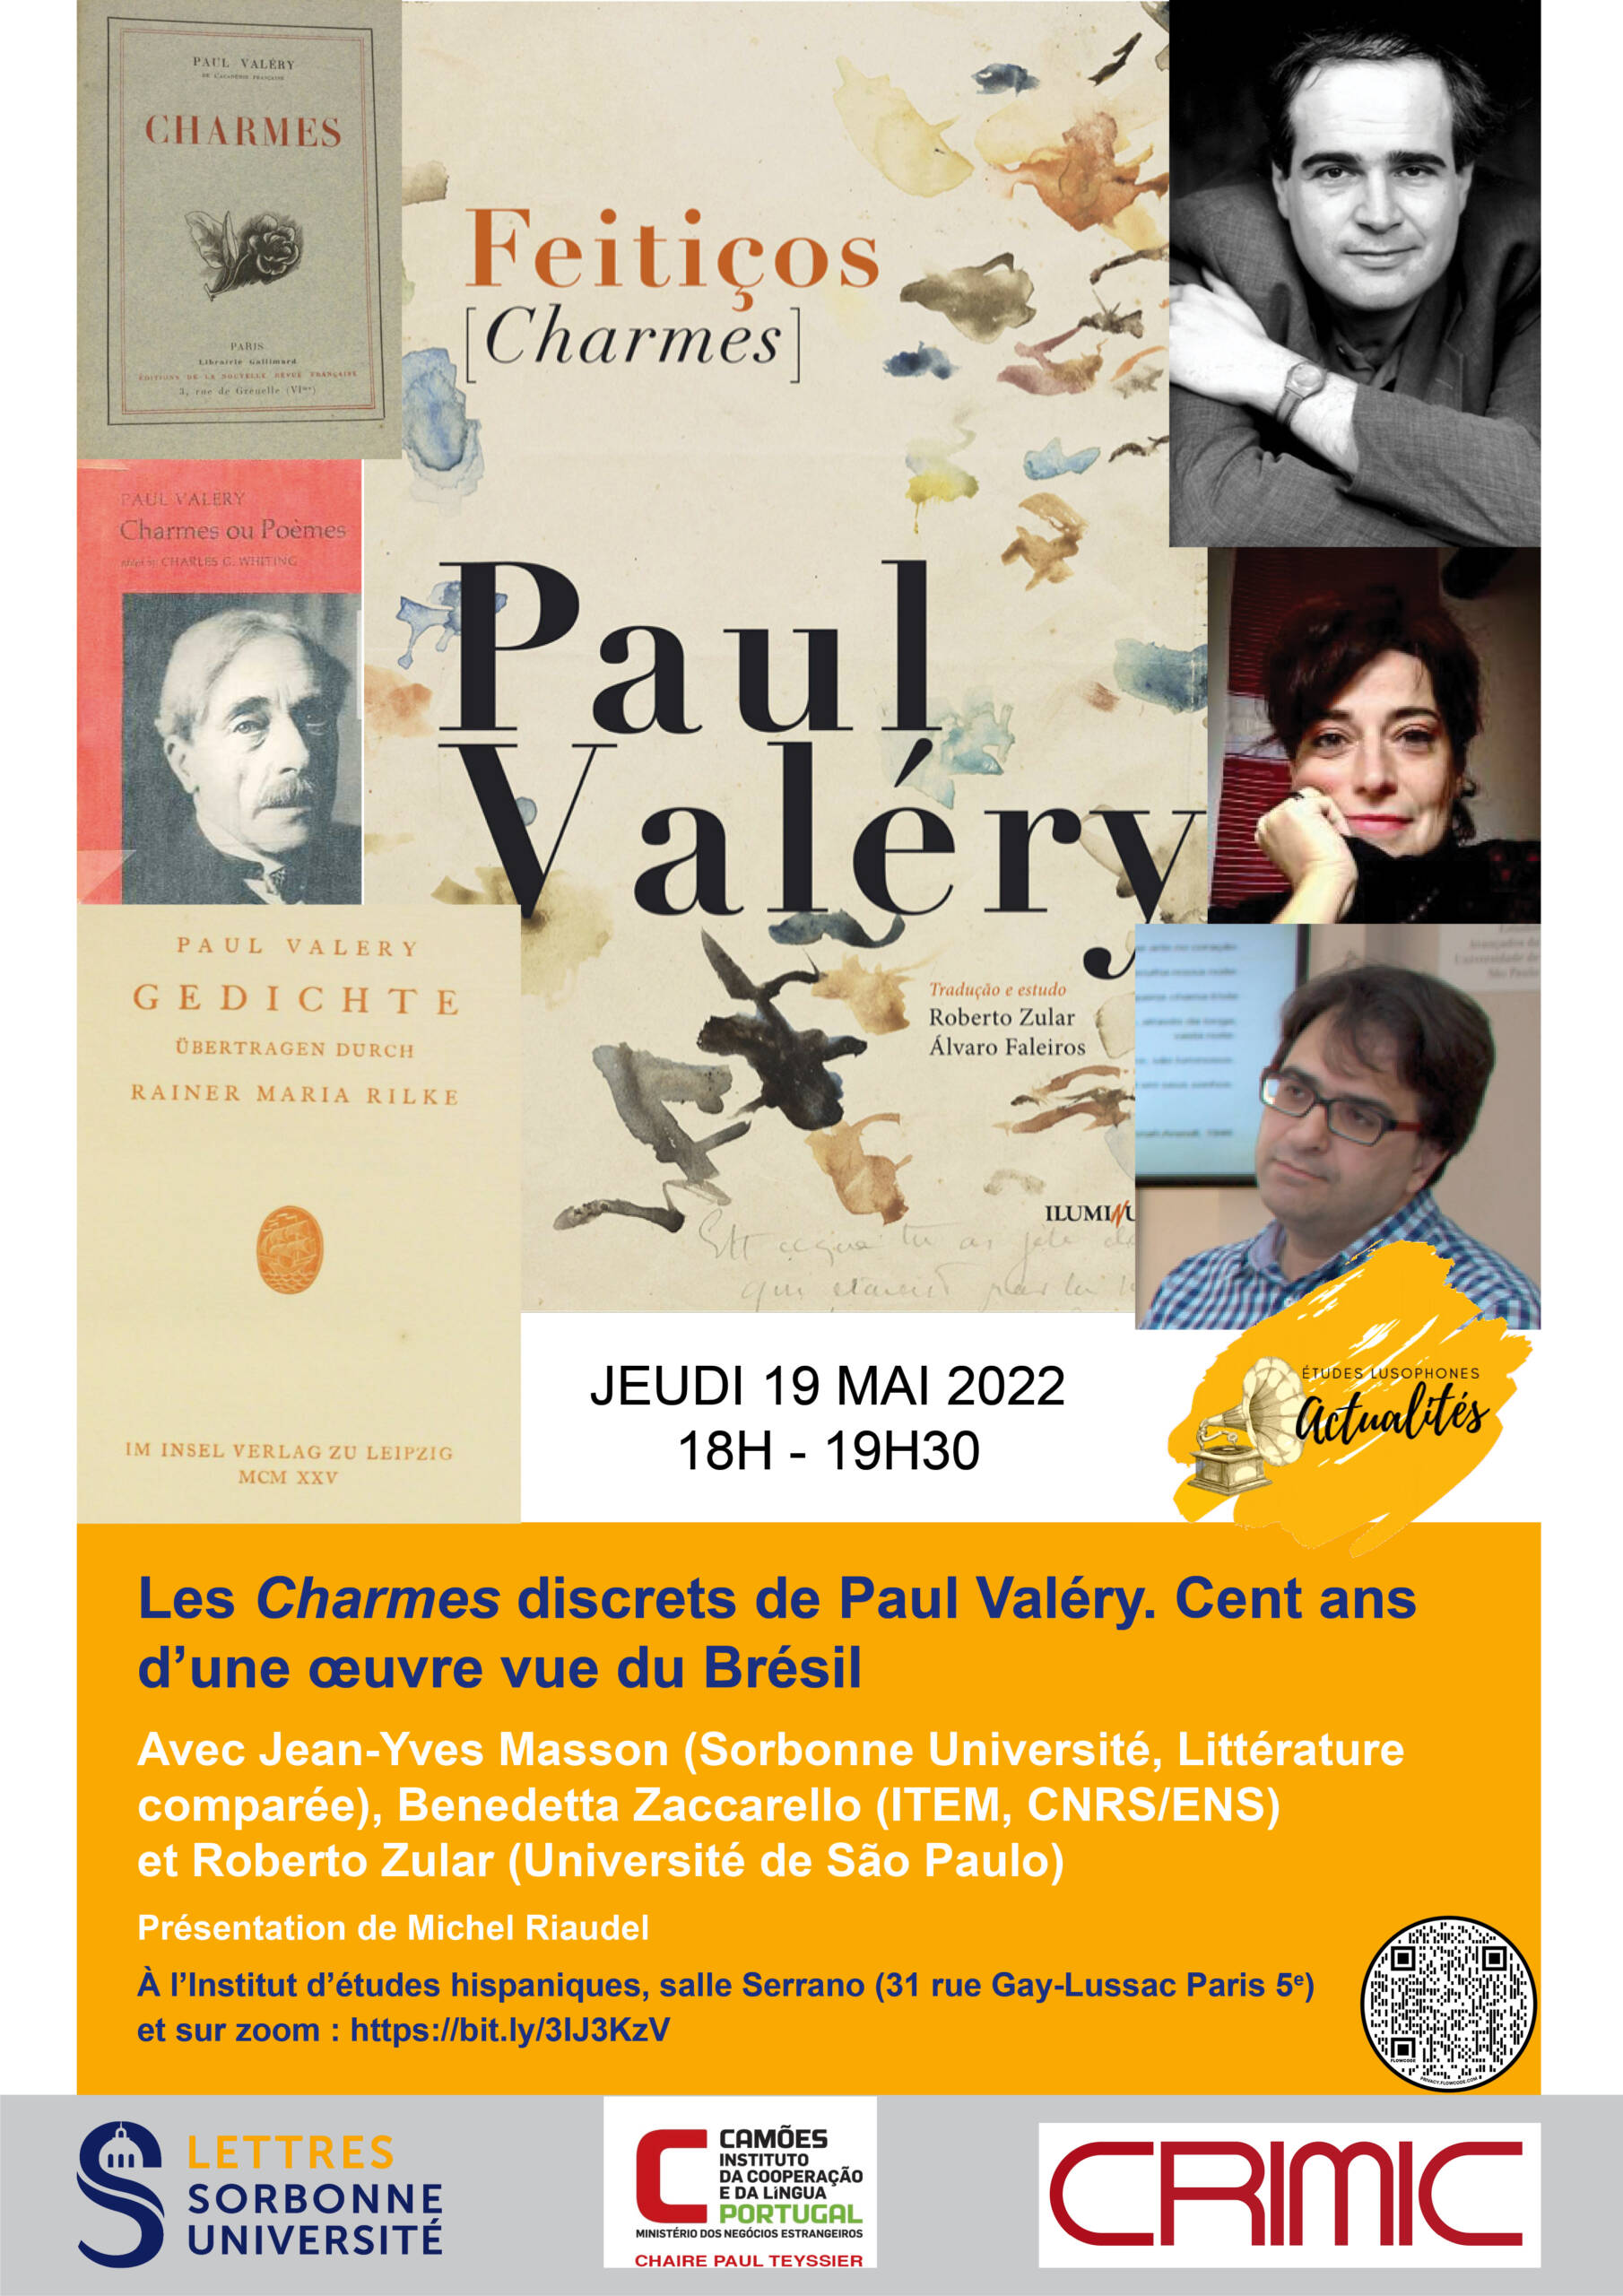 Les Charmes discrets de Paul Valéry. Cent ans d’une œuvre vue du Brésil